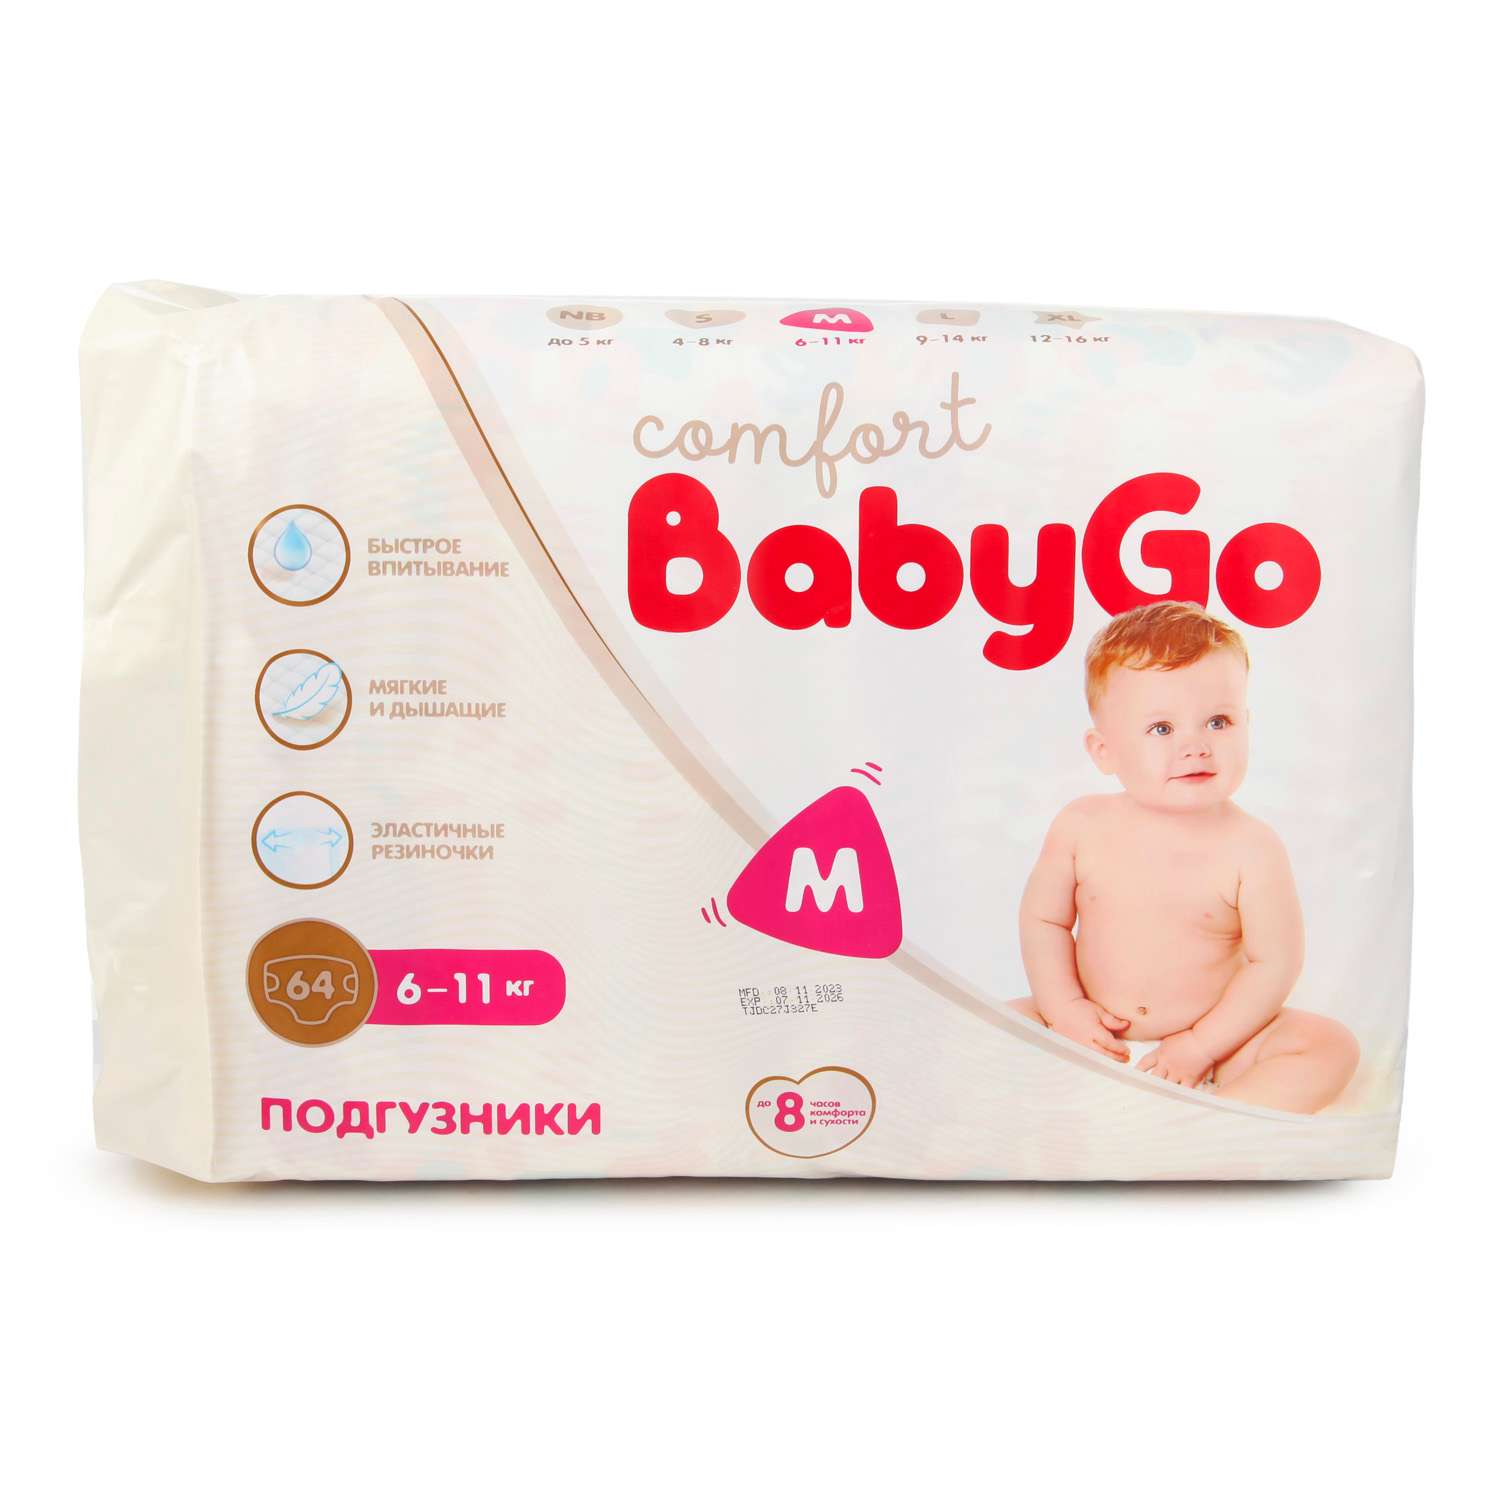 Подгузники BabyGo Comfort M 6-11кг 64шт - фото 11